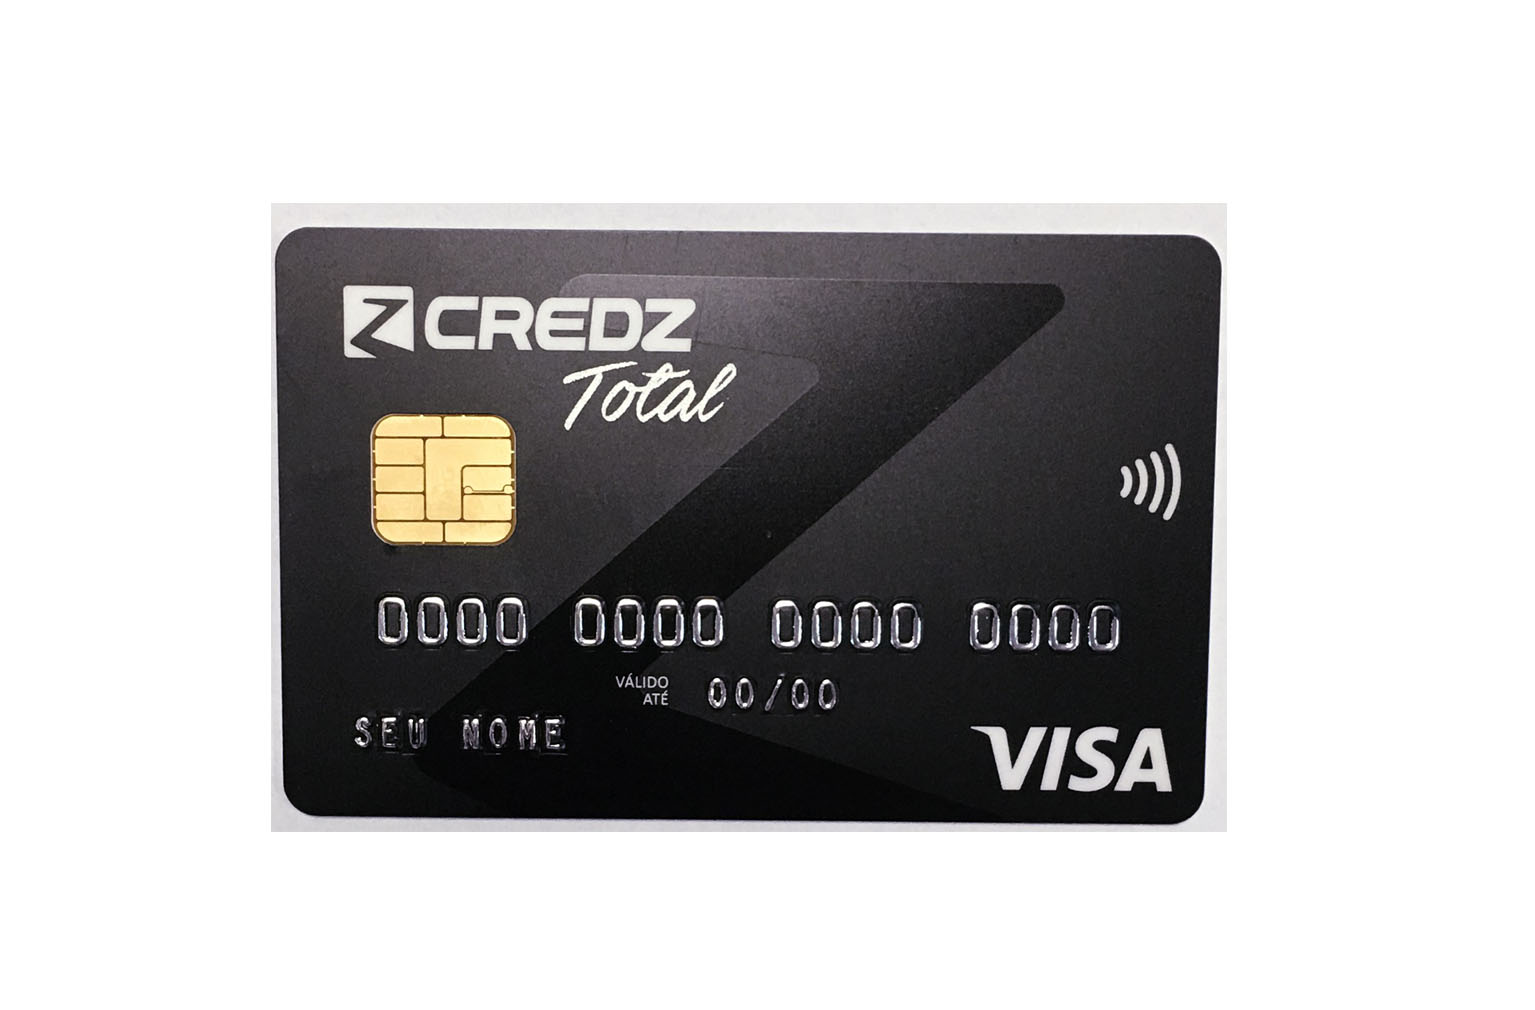 Cartão Credz Visa está 100% disponível para pagamento das tarifas de ônibus em SP